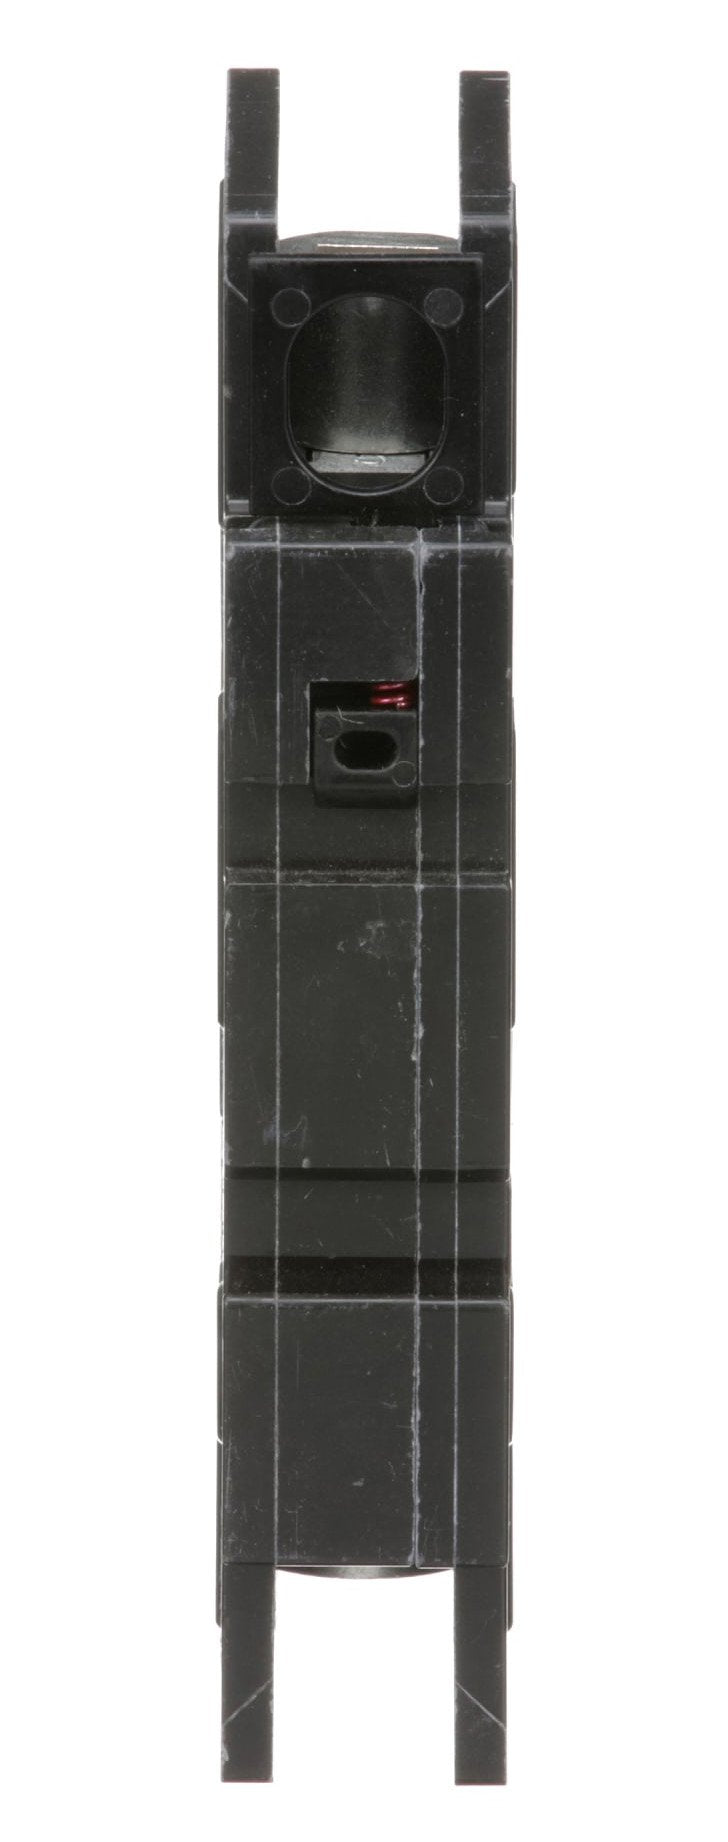 QOU180 - Square D - 80 Amp Circuit Breaker